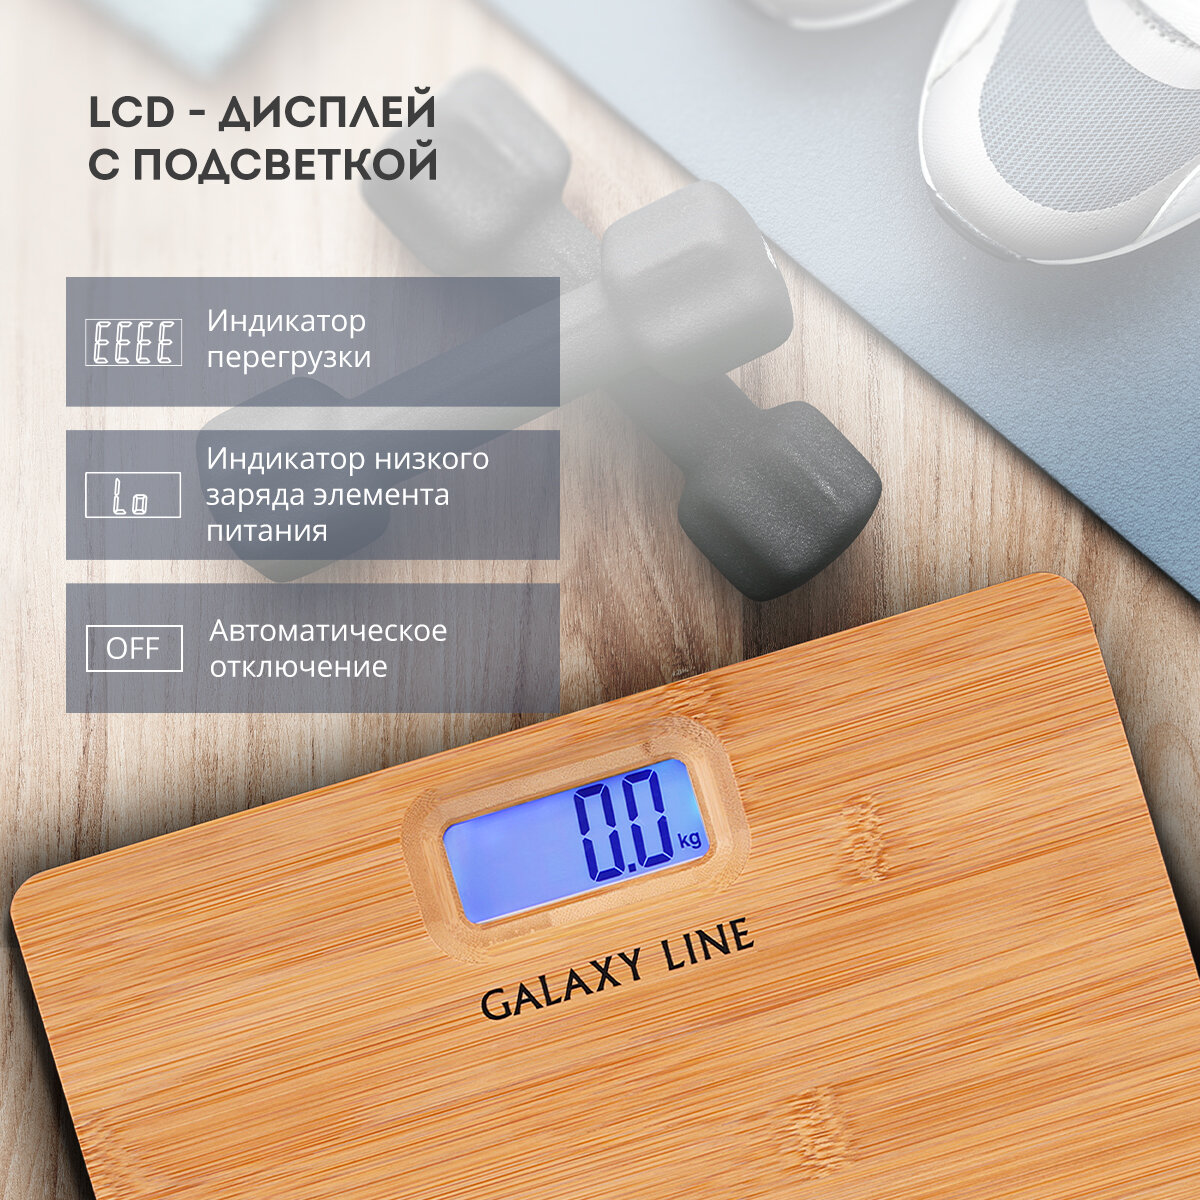 Весы напольные электронные GALAXY LINE GL4820